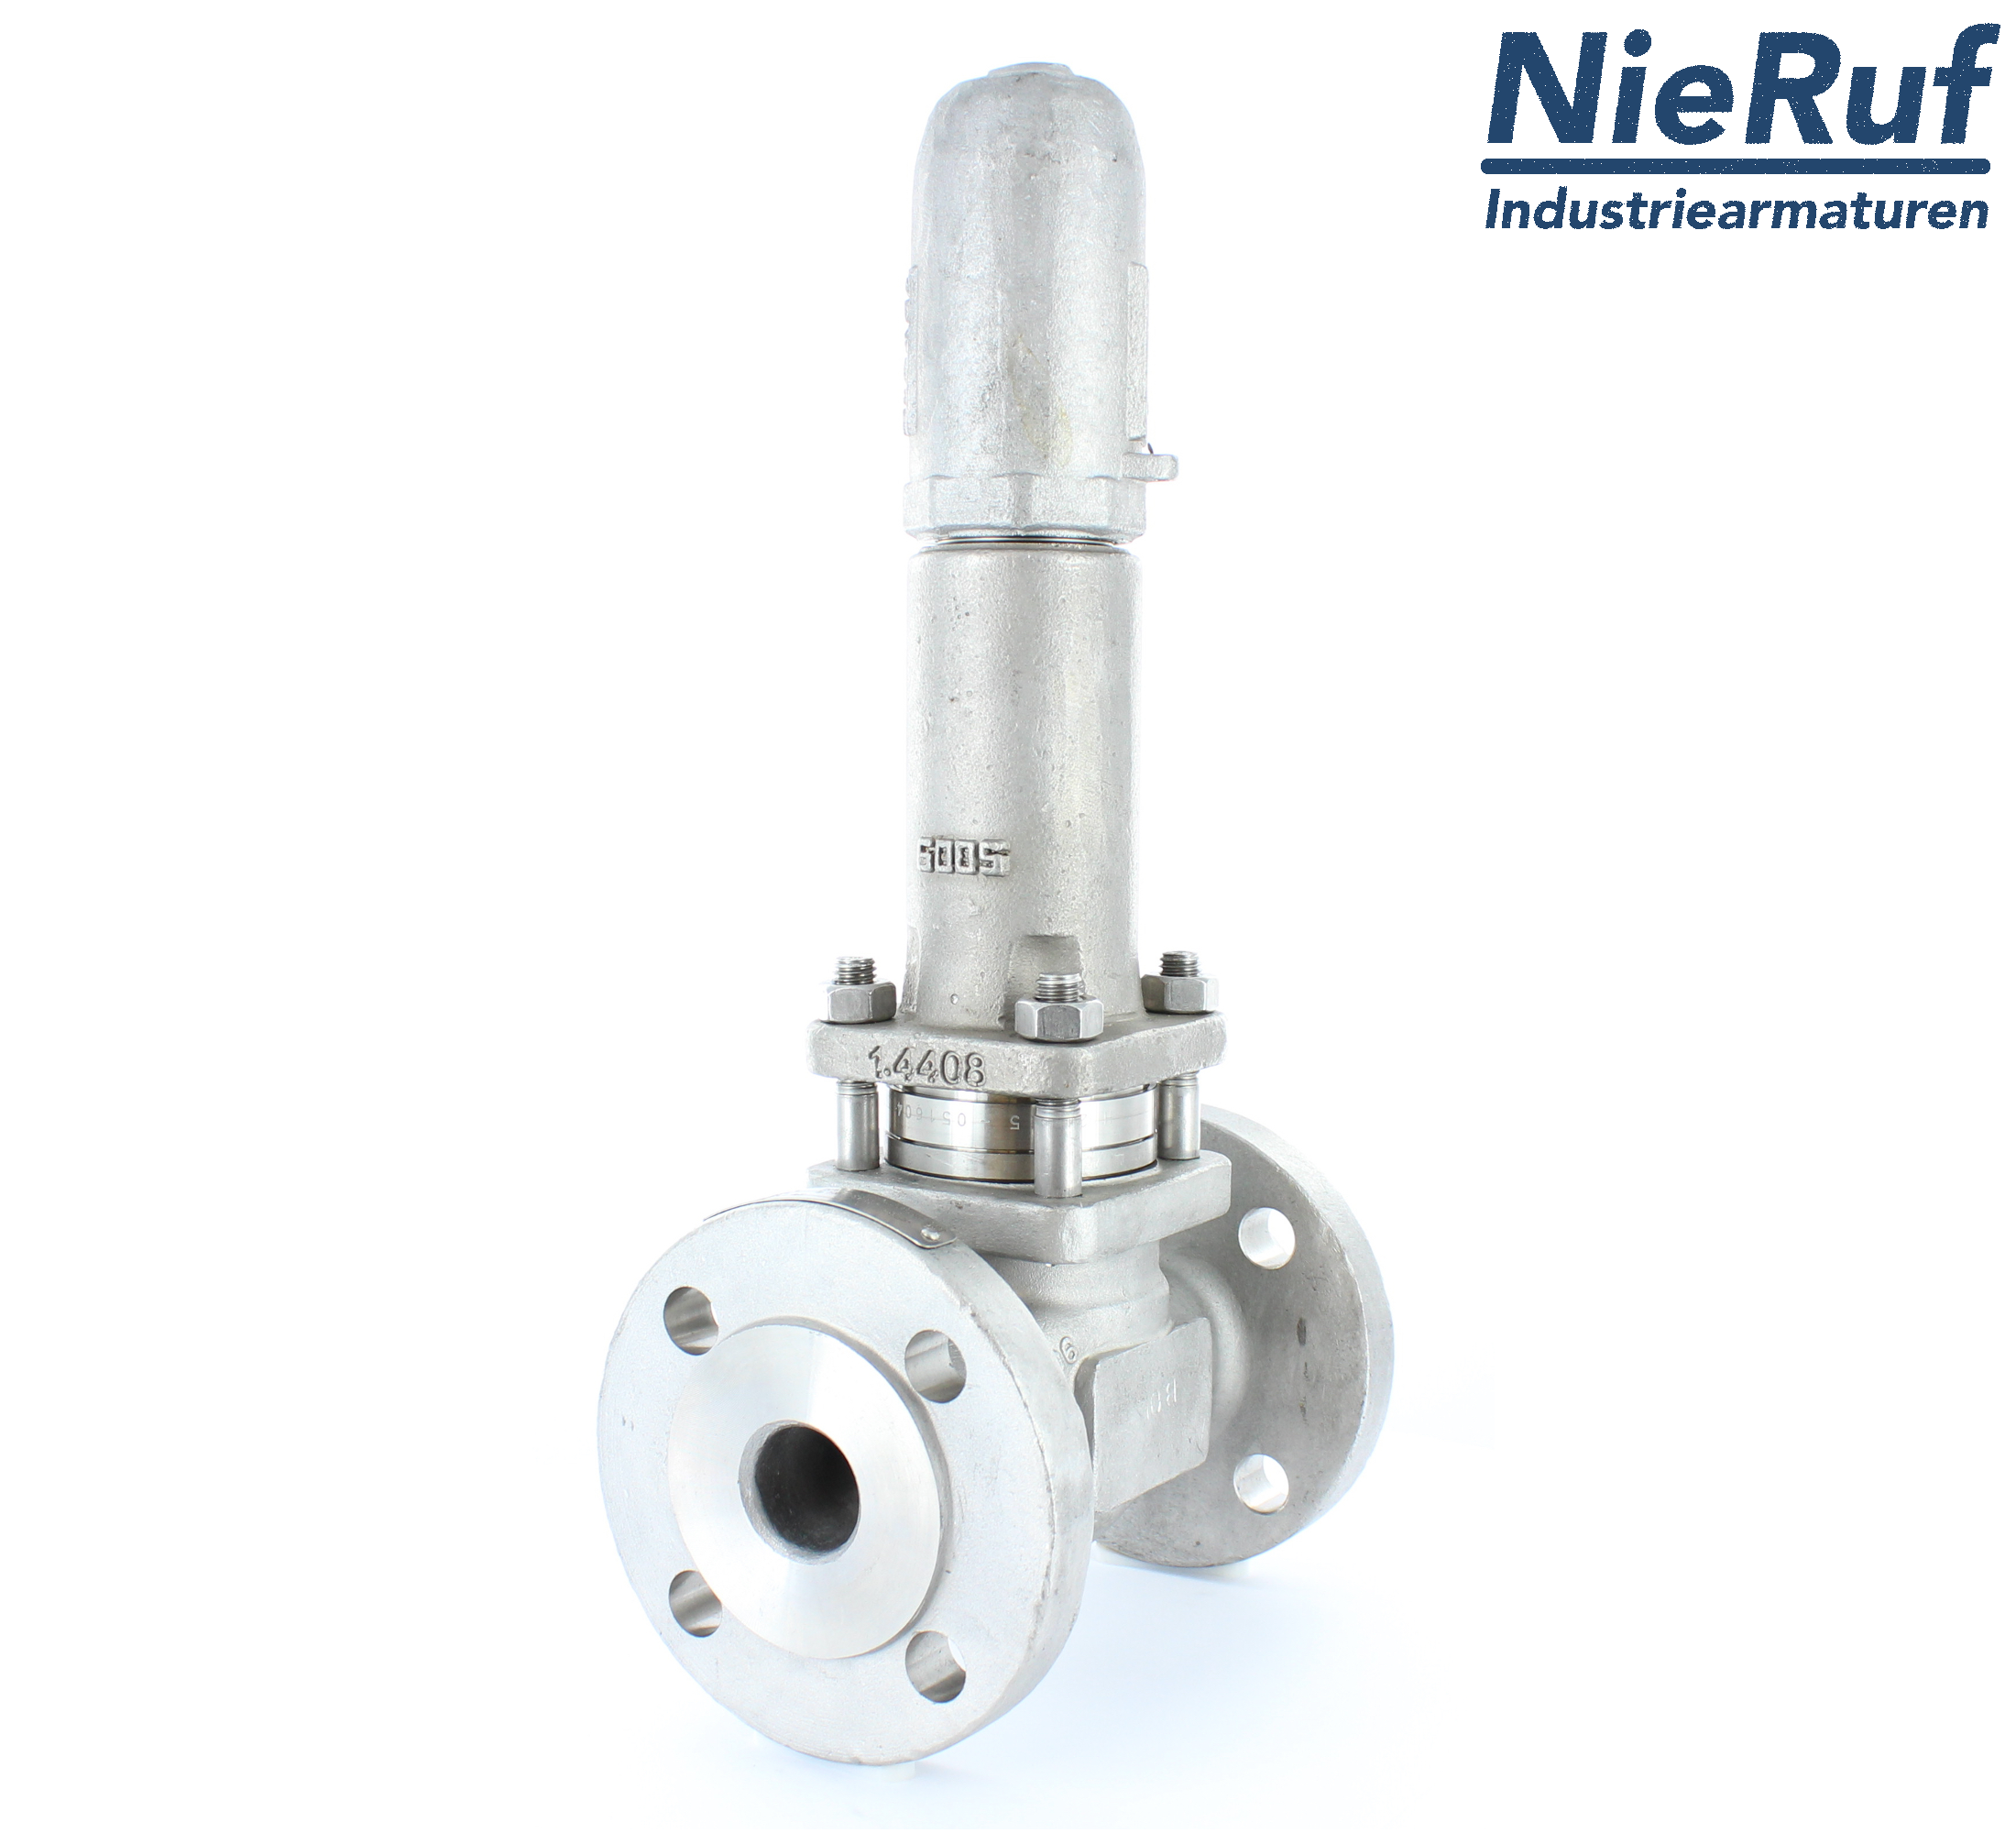 piston overflow valve DN 100 UV13 cast iron 1.0619+N 1,0 - 3,0 bar